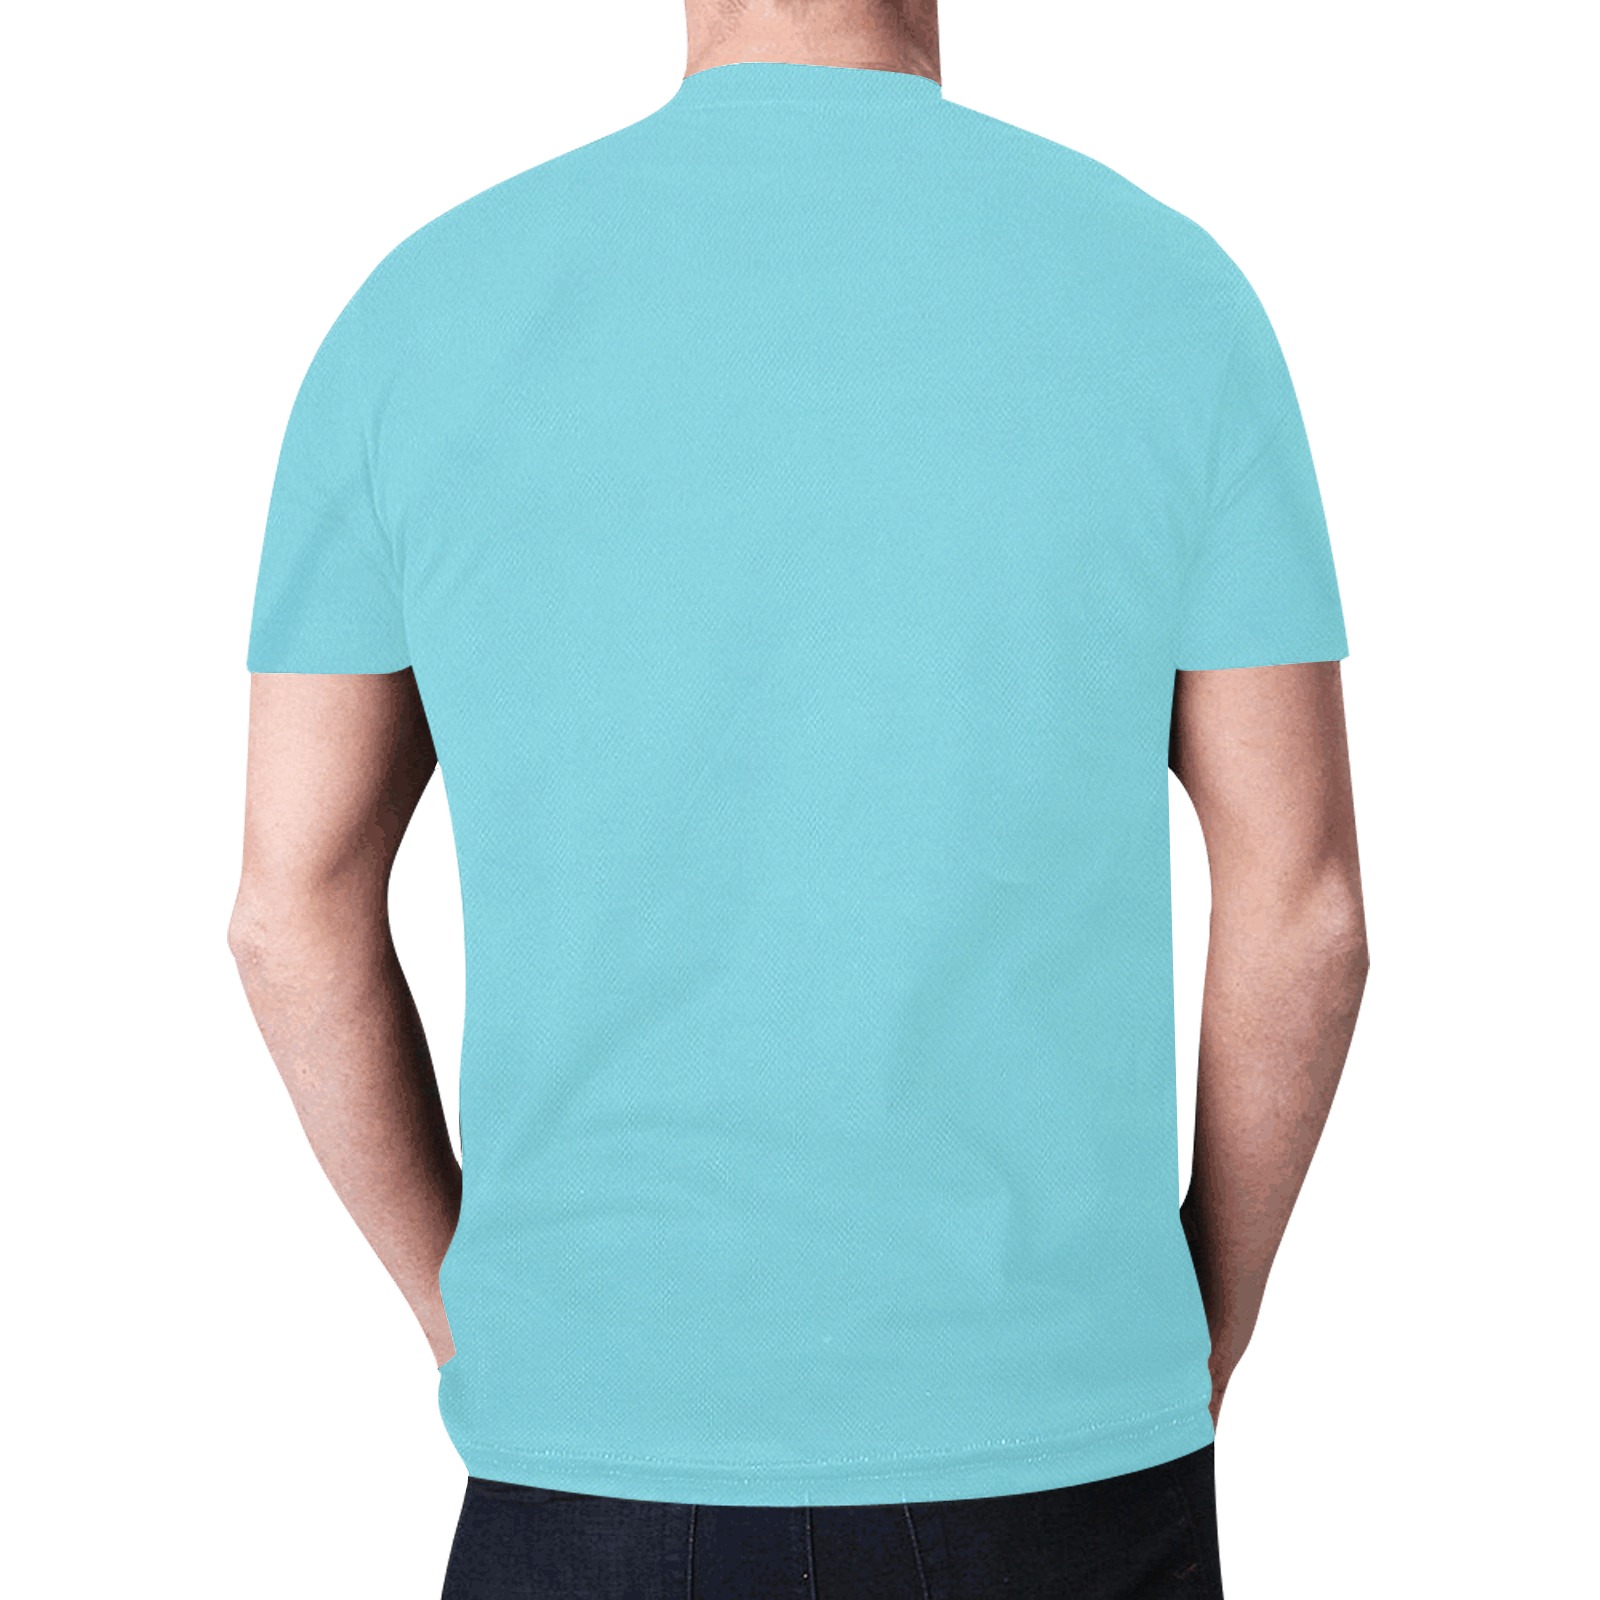 Golden Dragon Turquoise New All Over Print T-shirt for Men (Model T45)